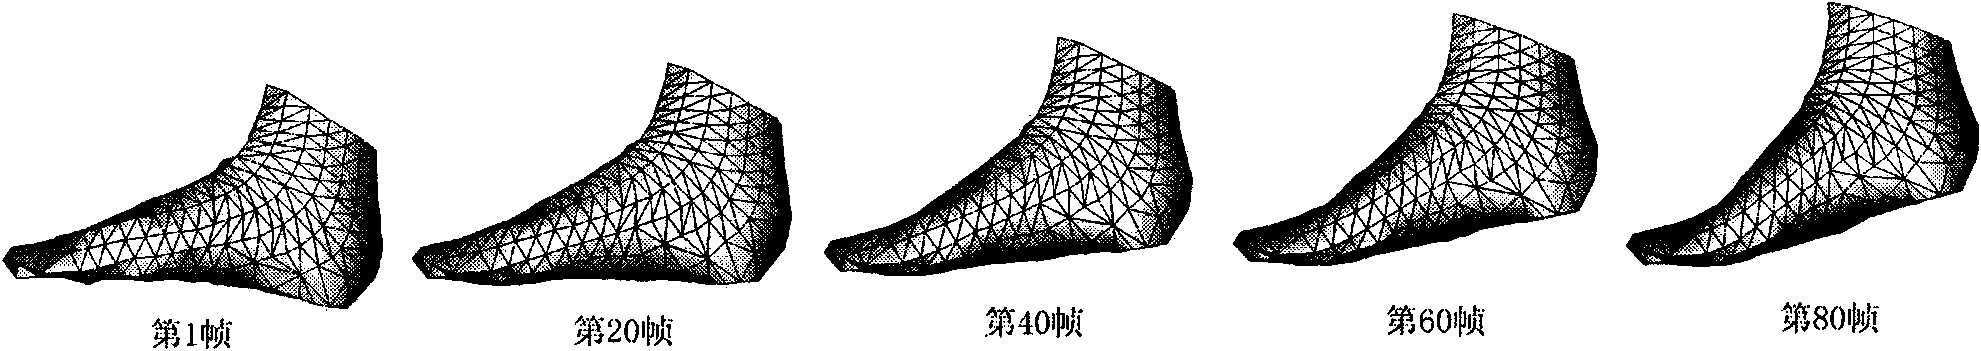 Method for obtaining dynamic shape of foot model